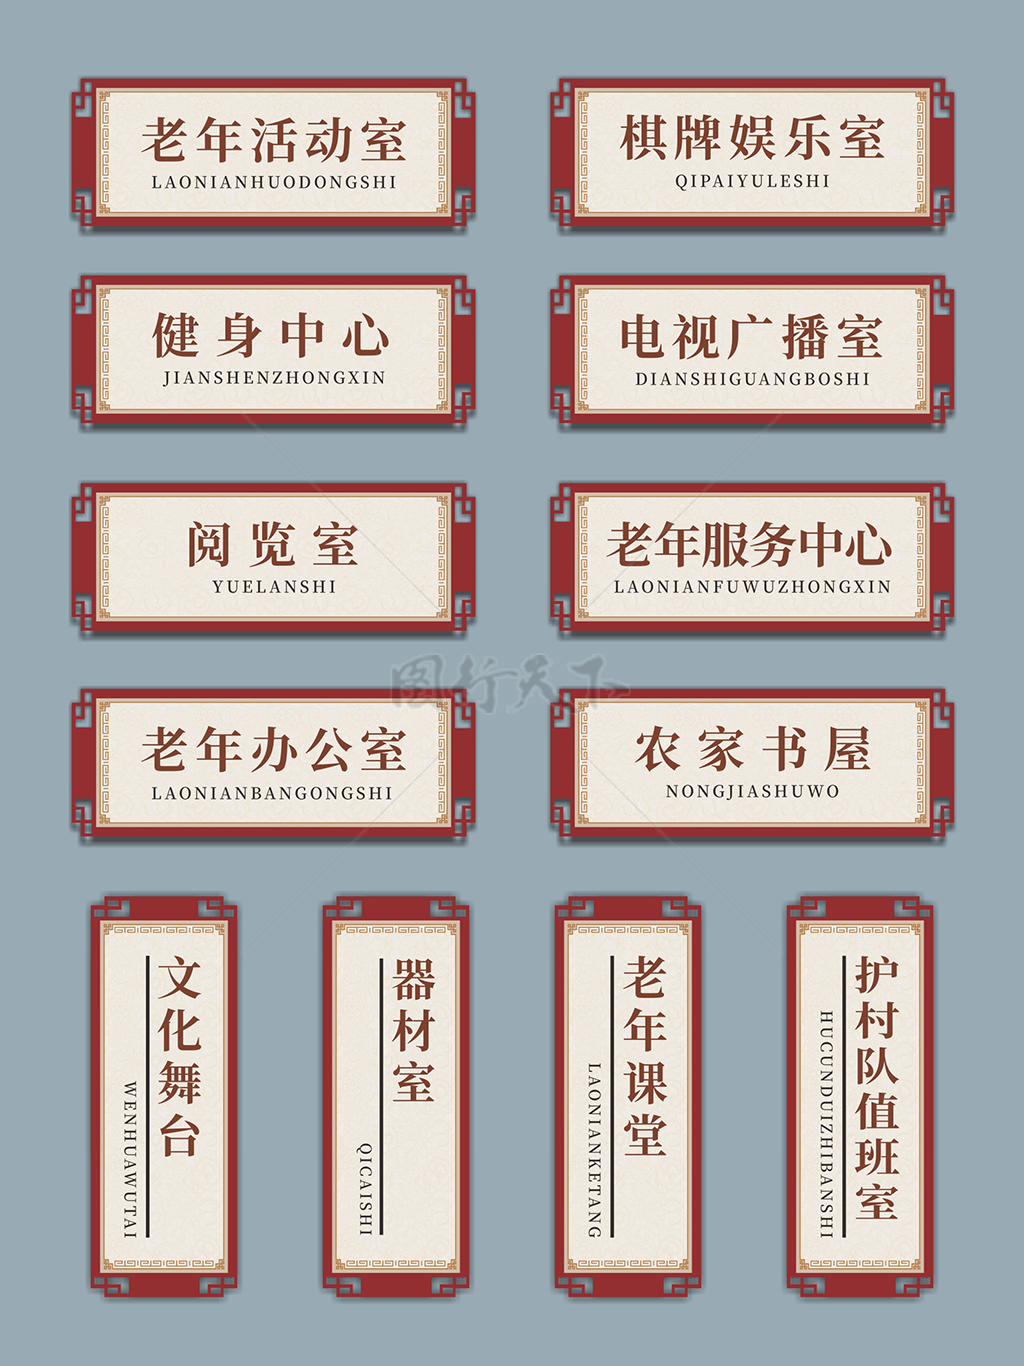 中式复古国风文化礼堂科室导视指示门牌